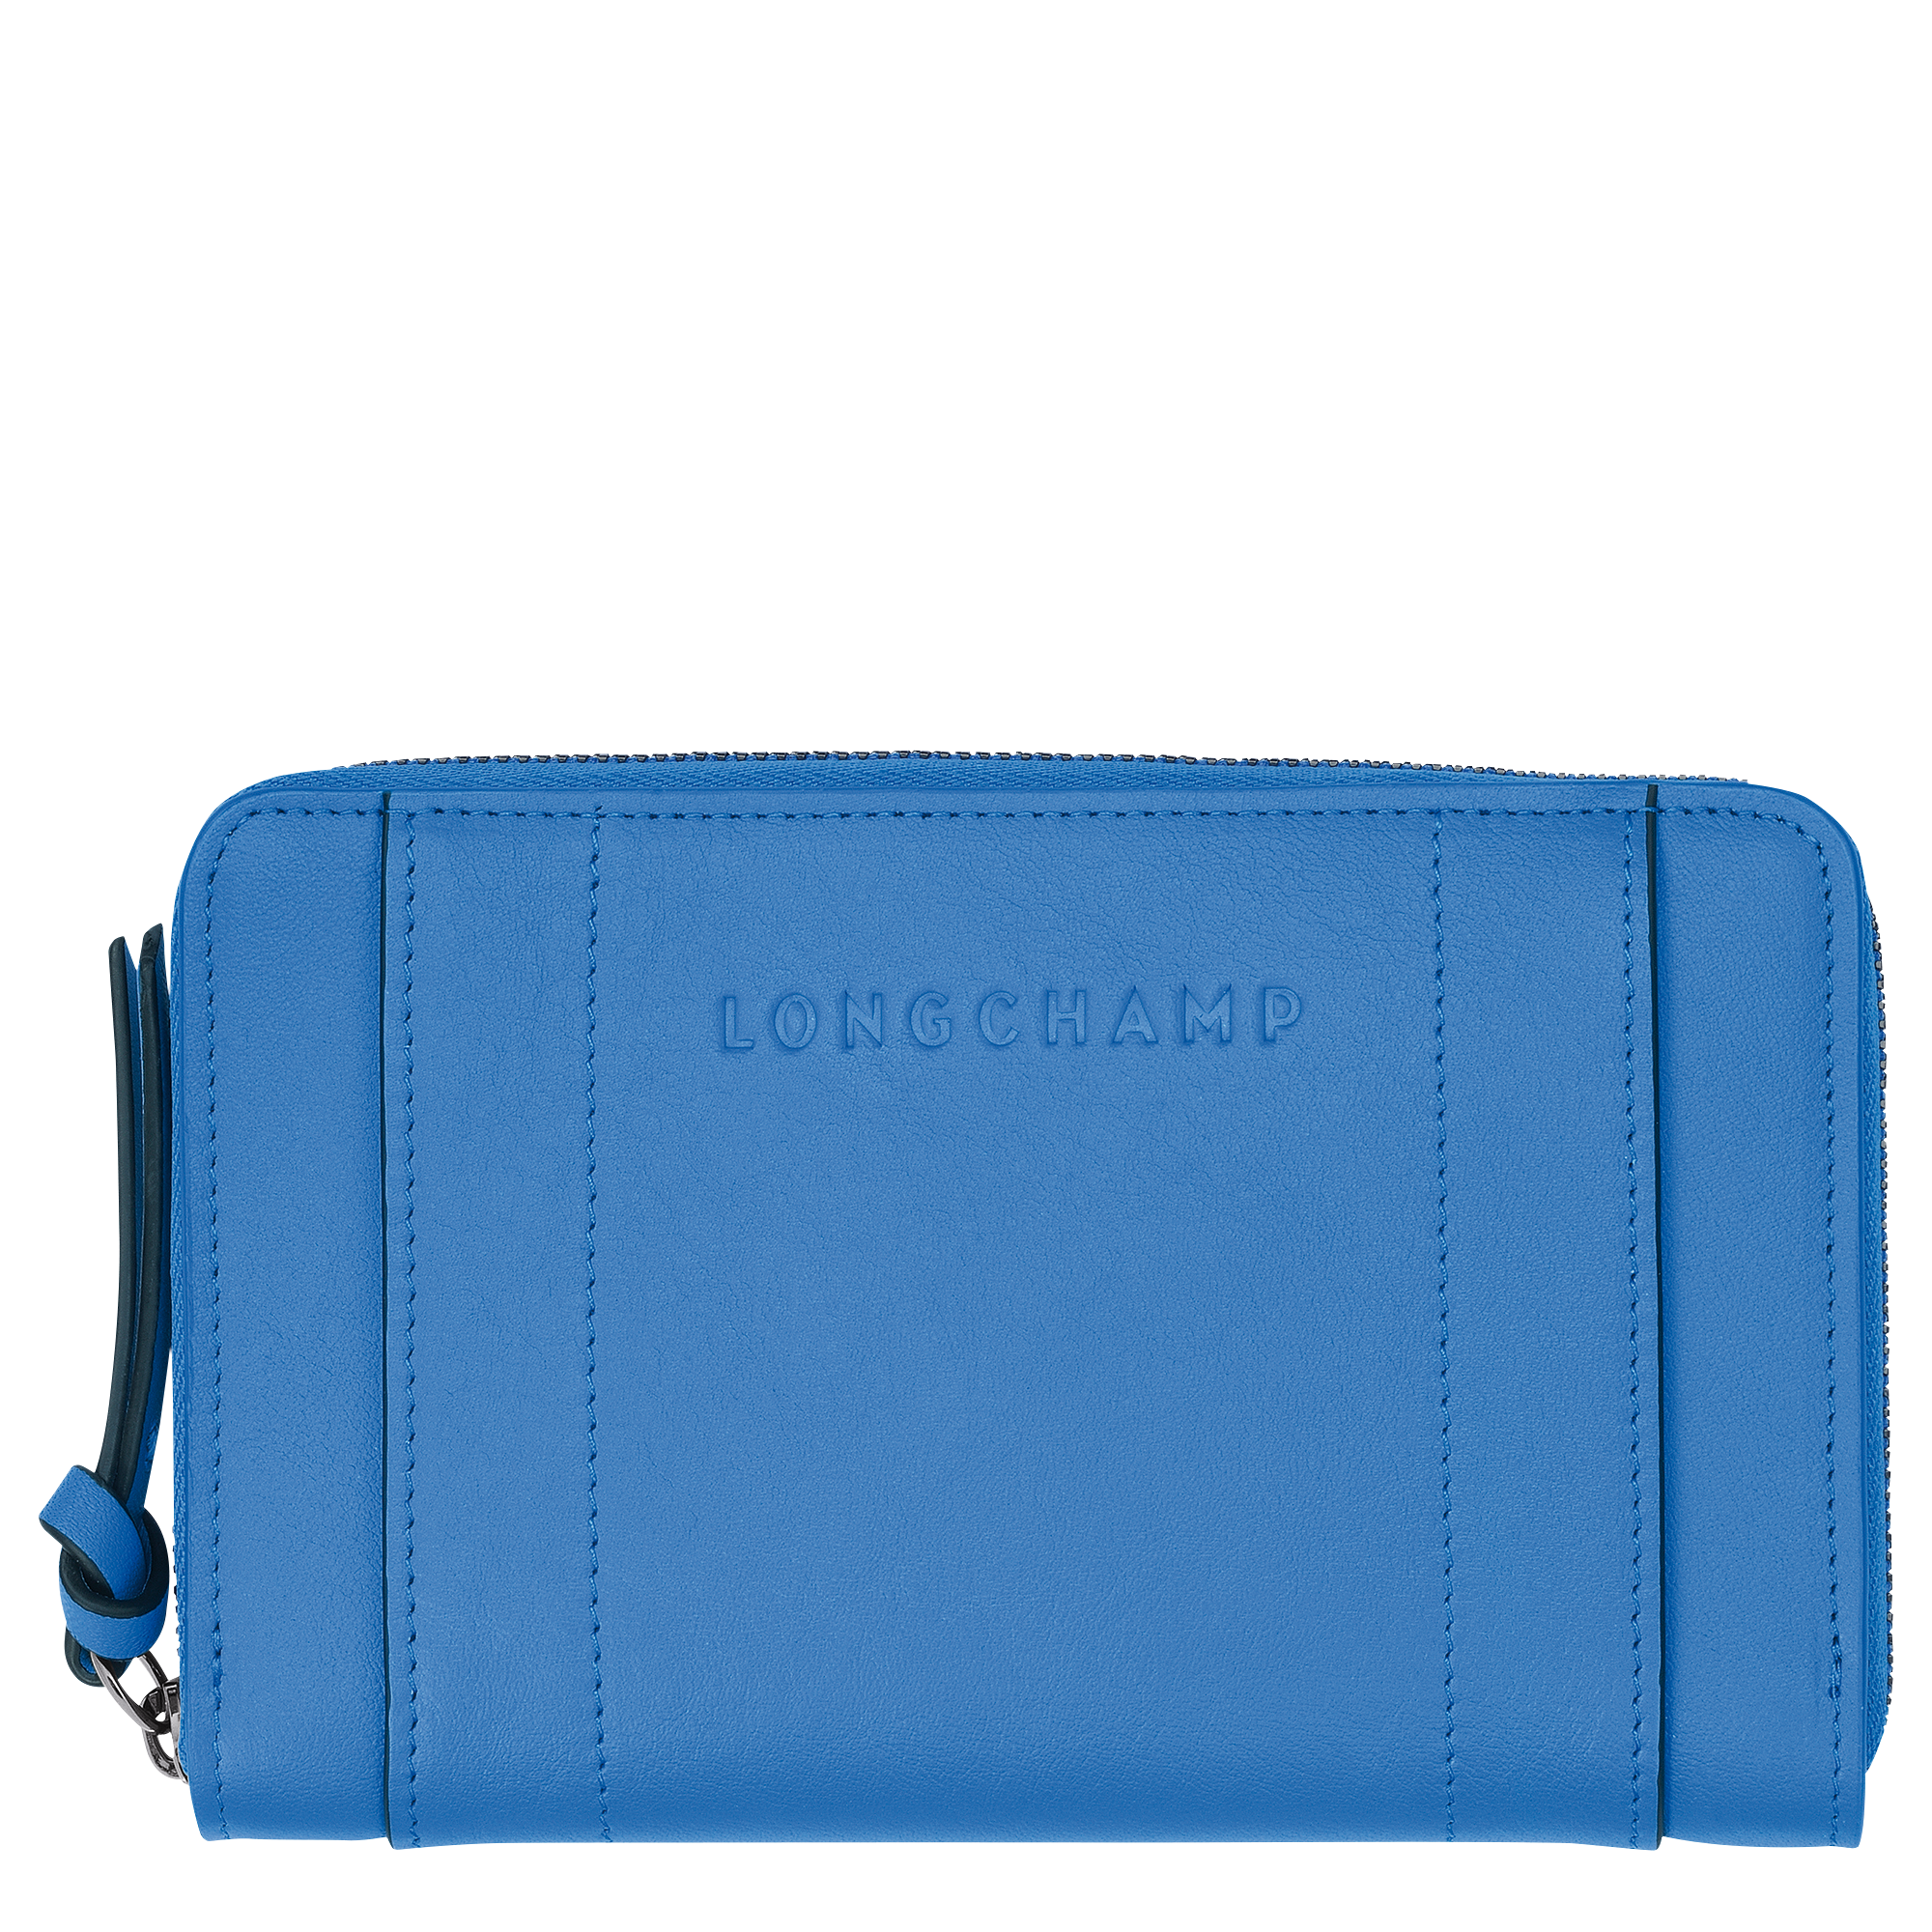 Longchamp 3D Wallet Cobalt - Leather (L3622HCV487)